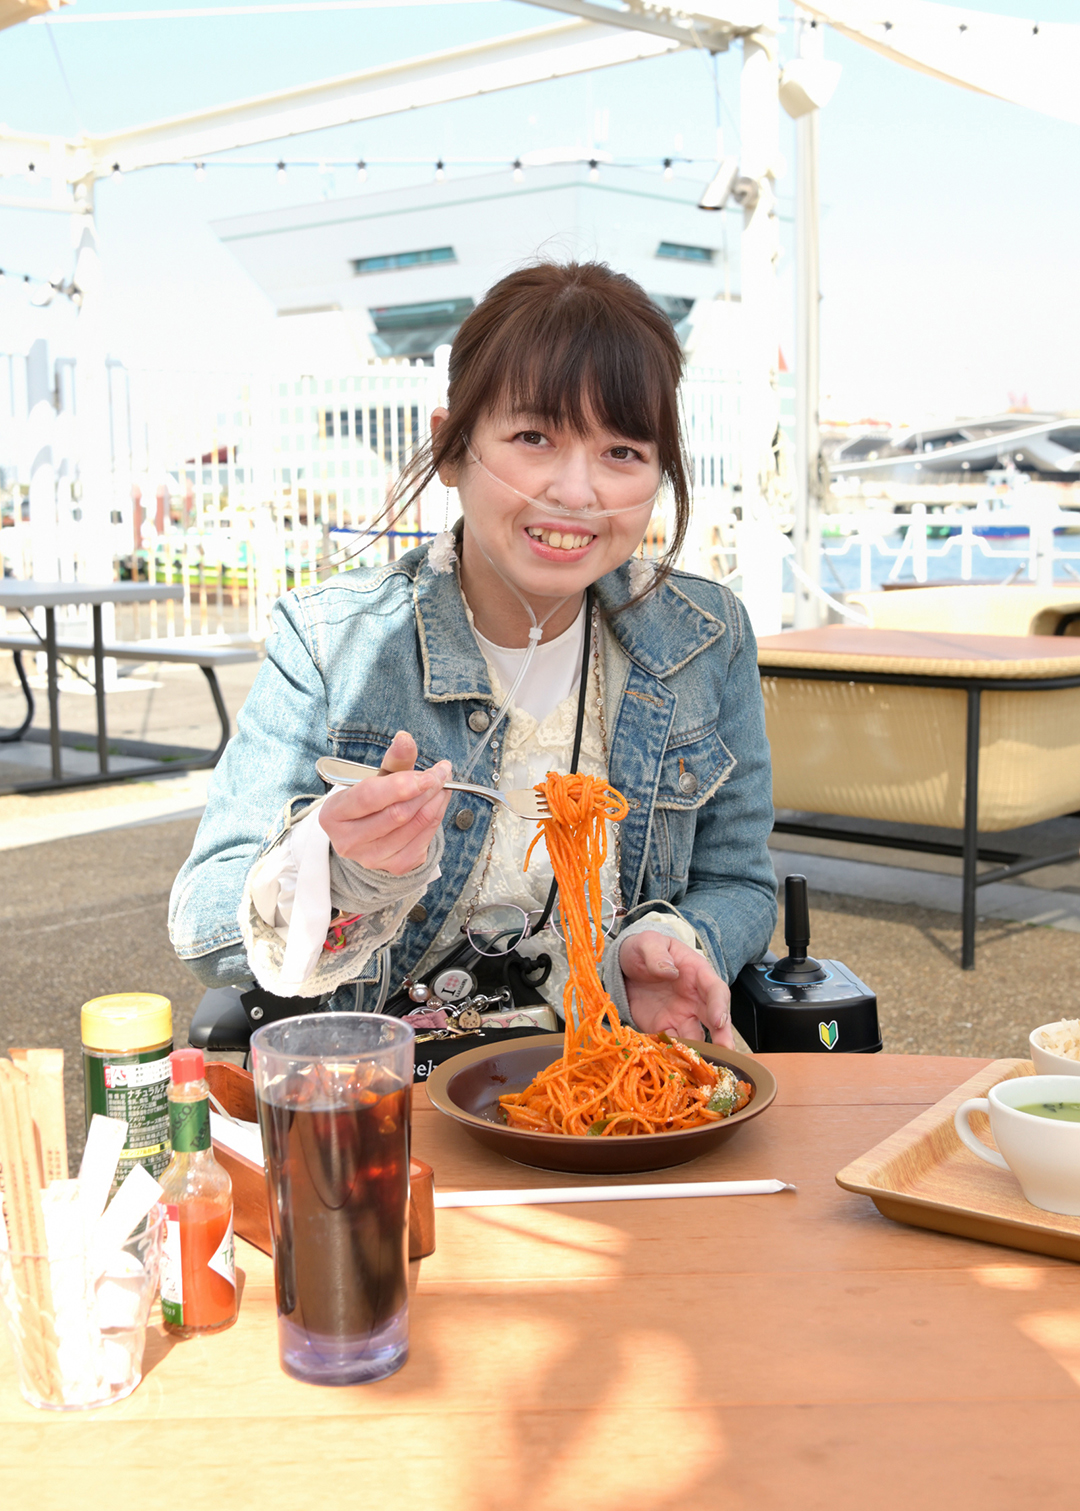 モデルの中田さんが笑顔でナポリタンスパゲッティ食べようとしている様子